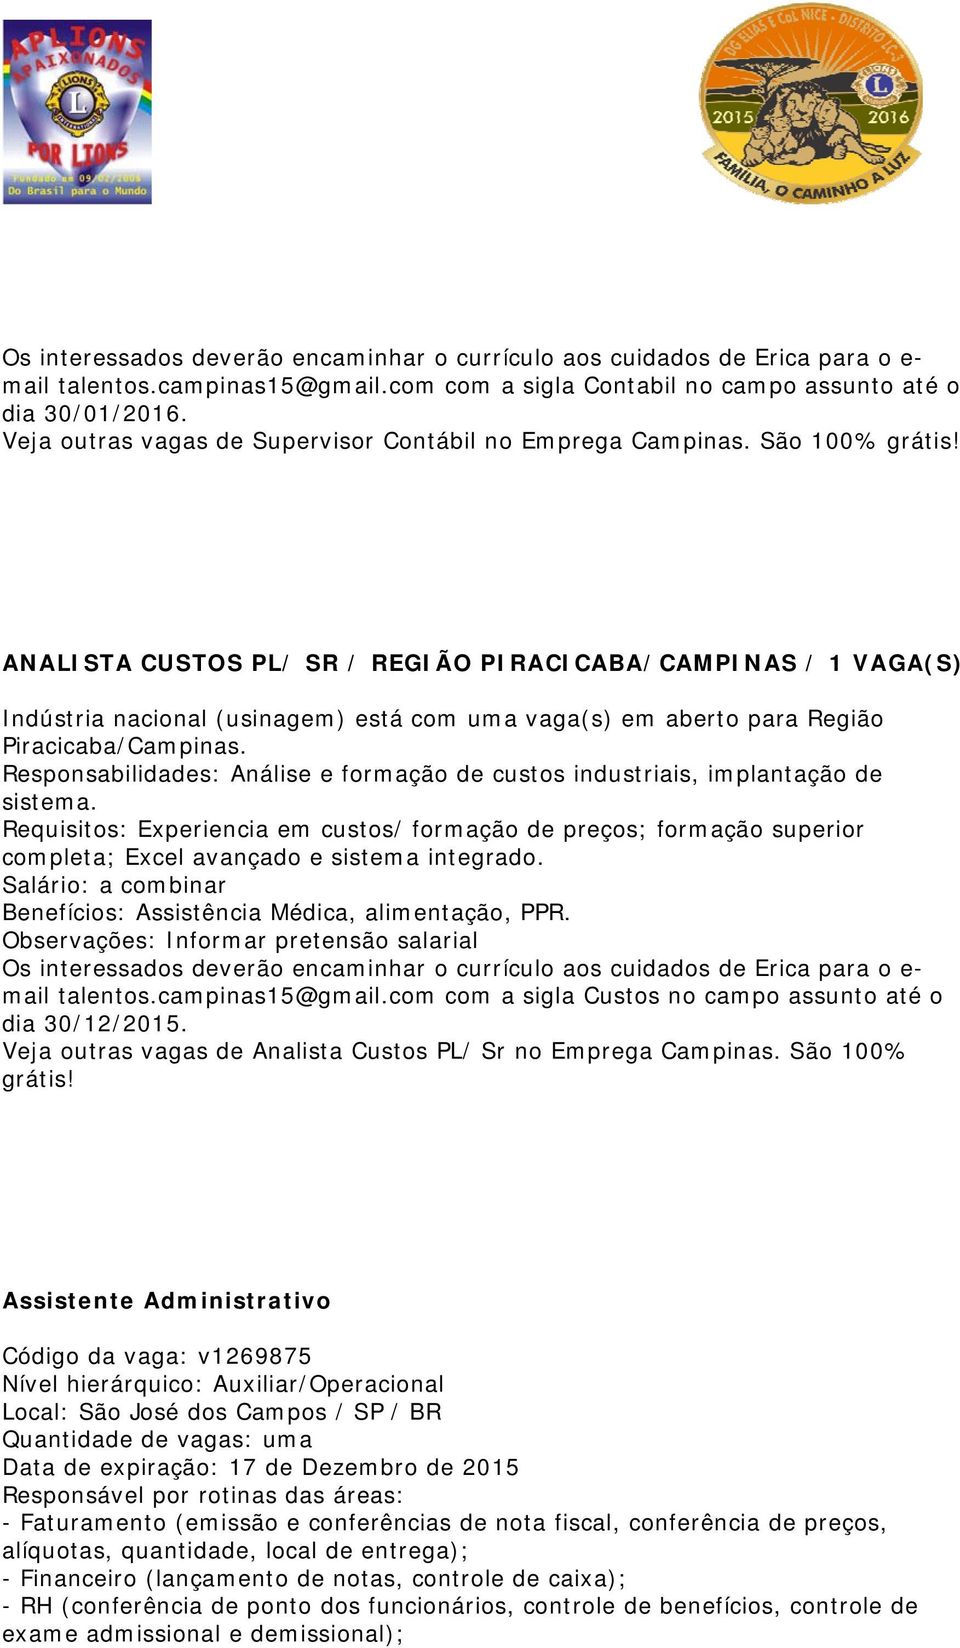 ANALISTA CUSTOS PL/ SR / REGIÃO PIRACICABA/CAMPINAS / 1 VAGA(S) Indústria nacional (usinagem) está com uma vaga(s) em aberto para Região Piracicaba/Campinas.